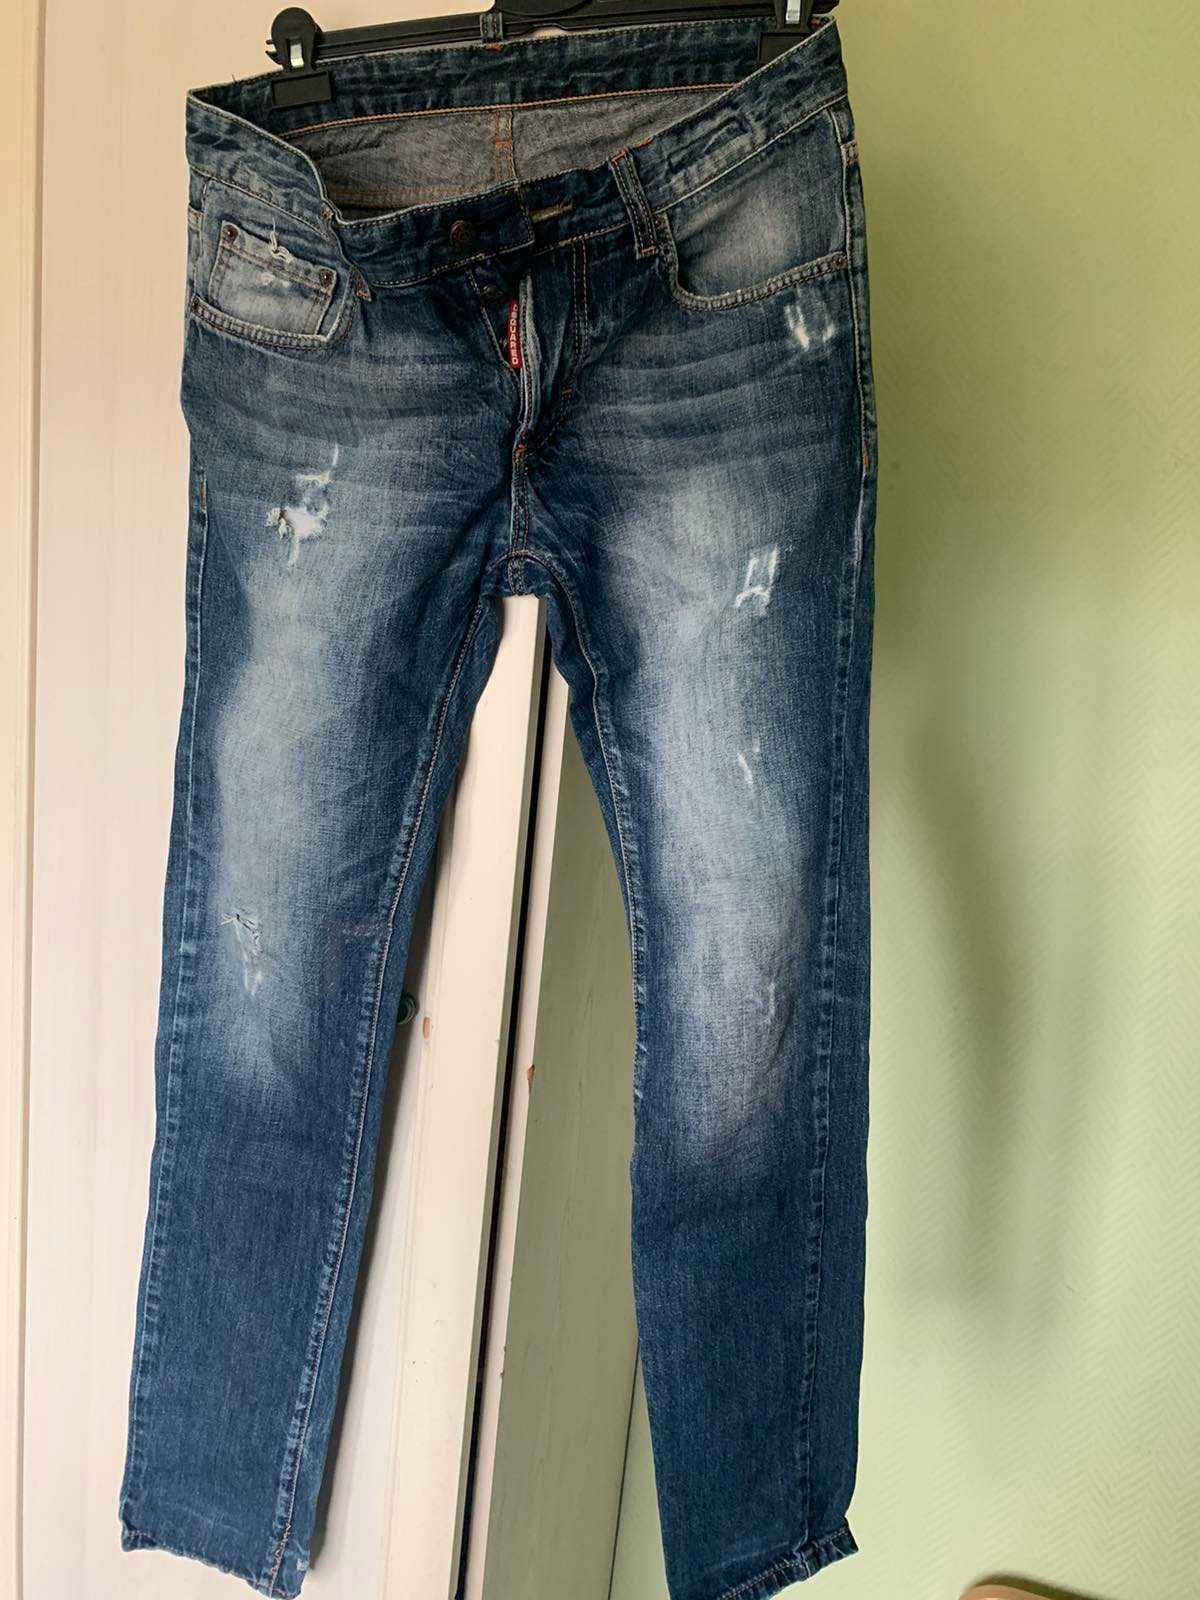 Продам джинсы новые мужские